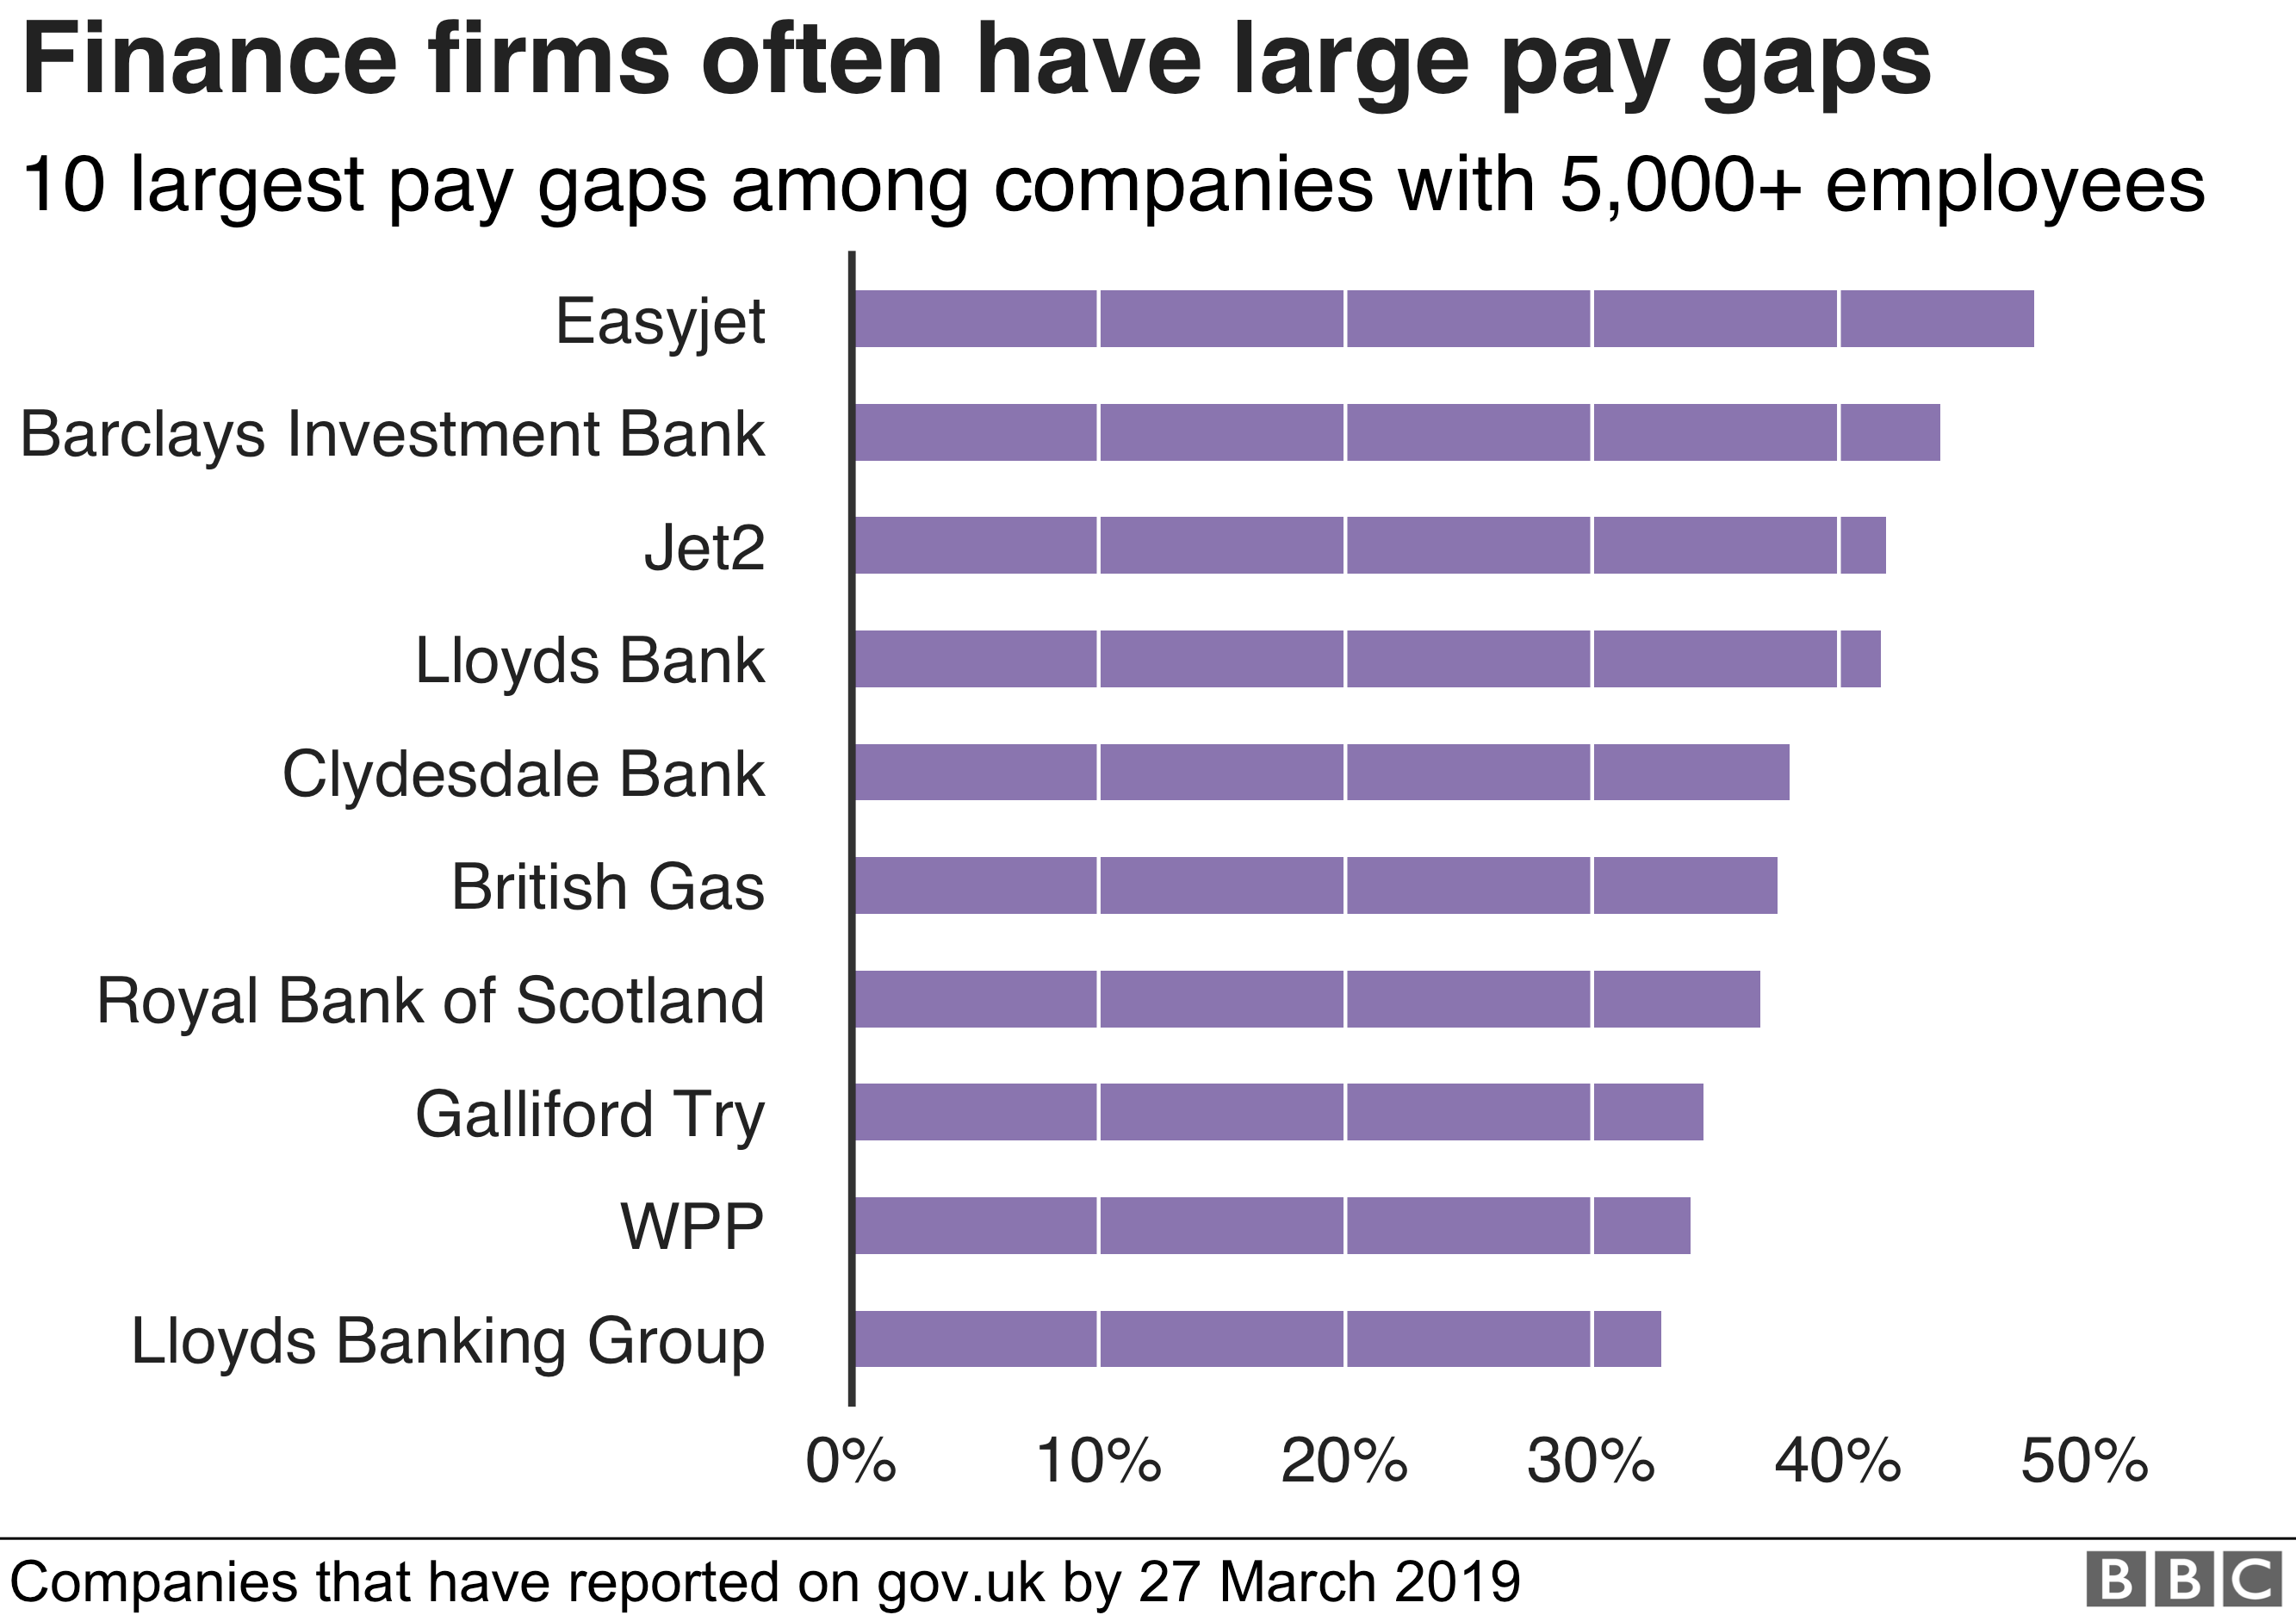 Диаграмма, показывающая, что 5 из 10 крупных фирм с самым большим разрывом в оплате труда являются банками.